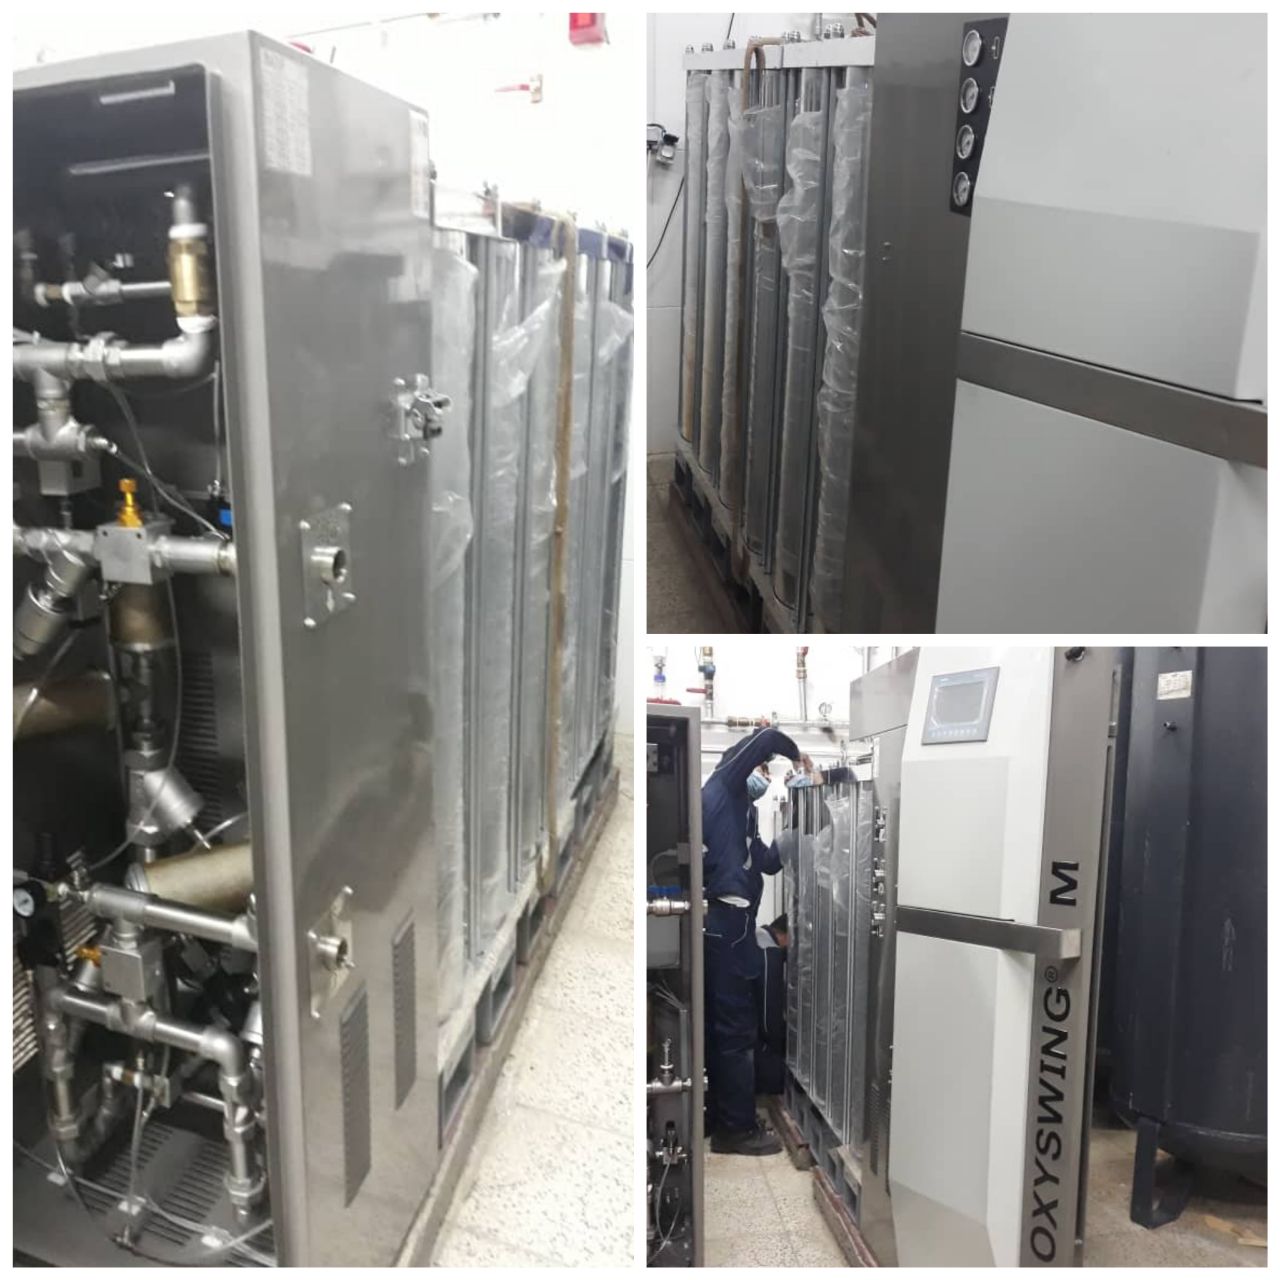 نصب و راه اندازی دستگاه اکسیژن ساز ۶۱۴ لیتری در بیمارستان بهار دانشگاه علوم پزشکی شاهرود